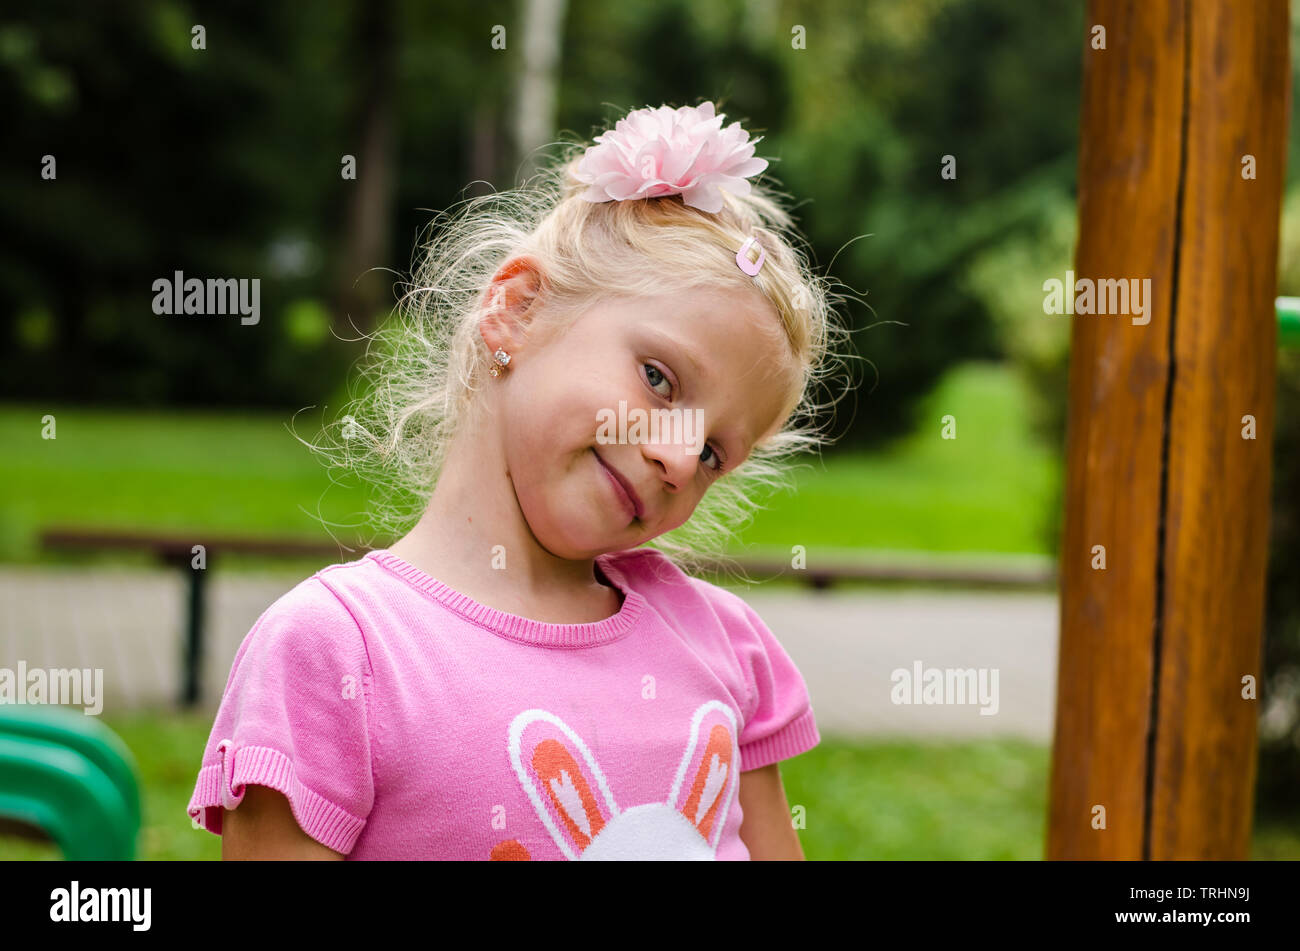 lovely blond little girl portrait Stock Photo